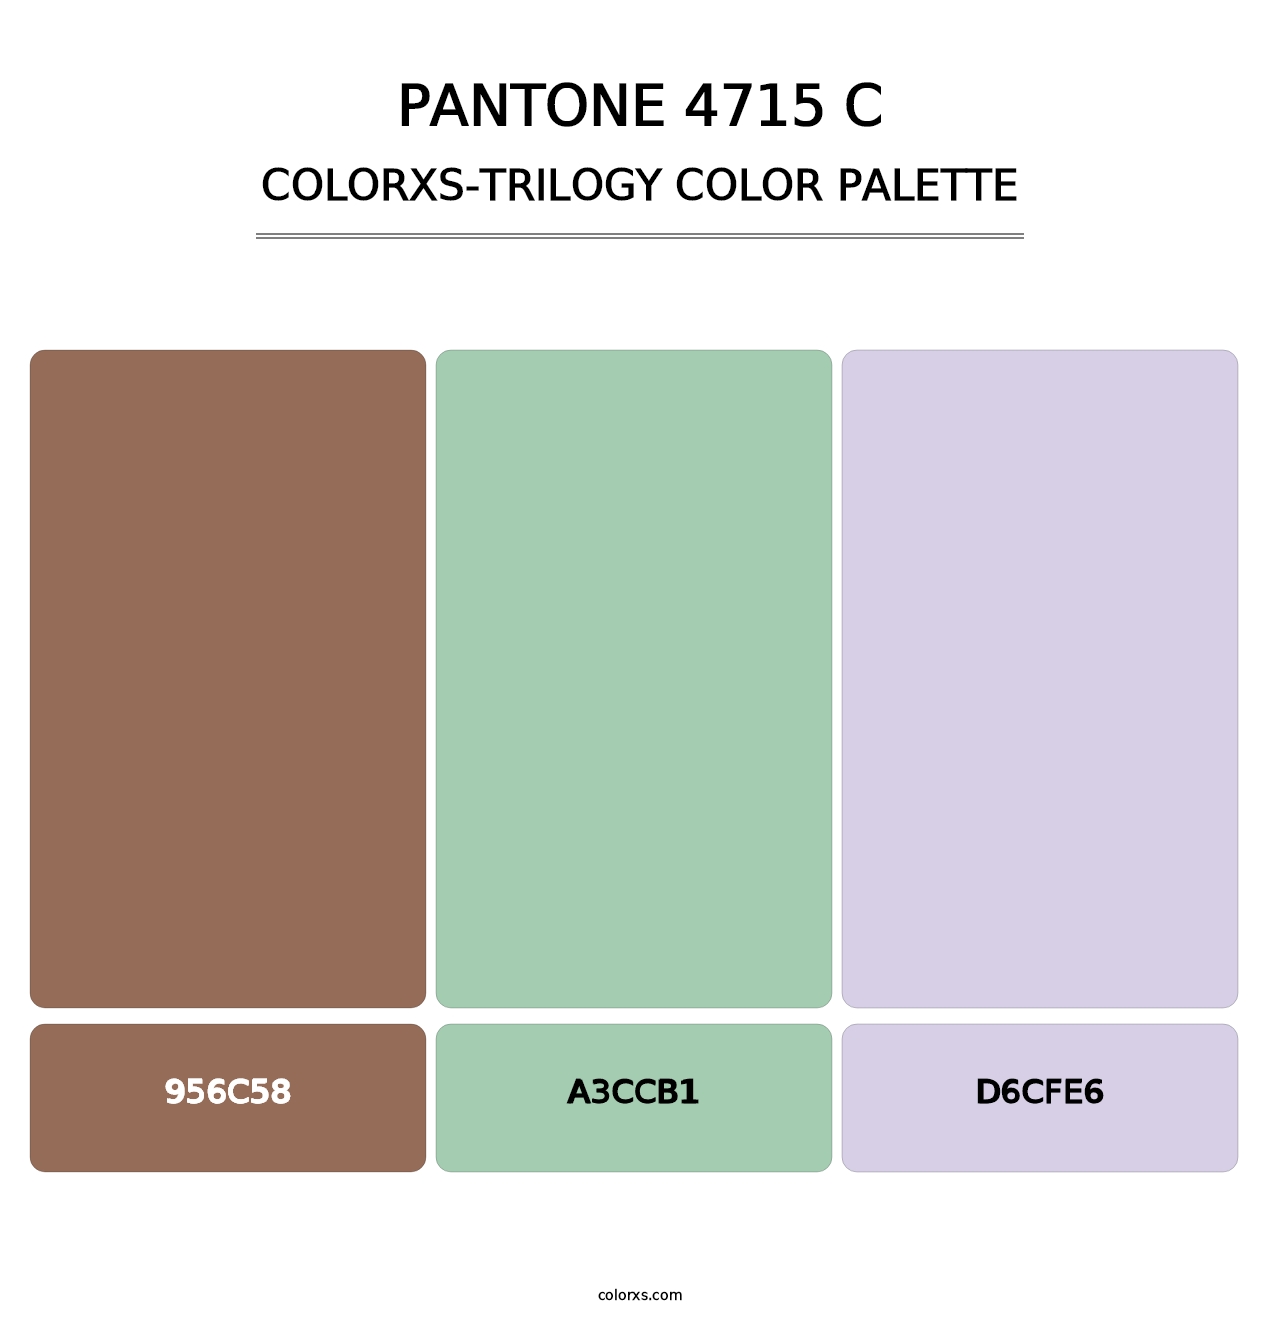 PANTONE 4715 C - Colorxs Trilogy Palette